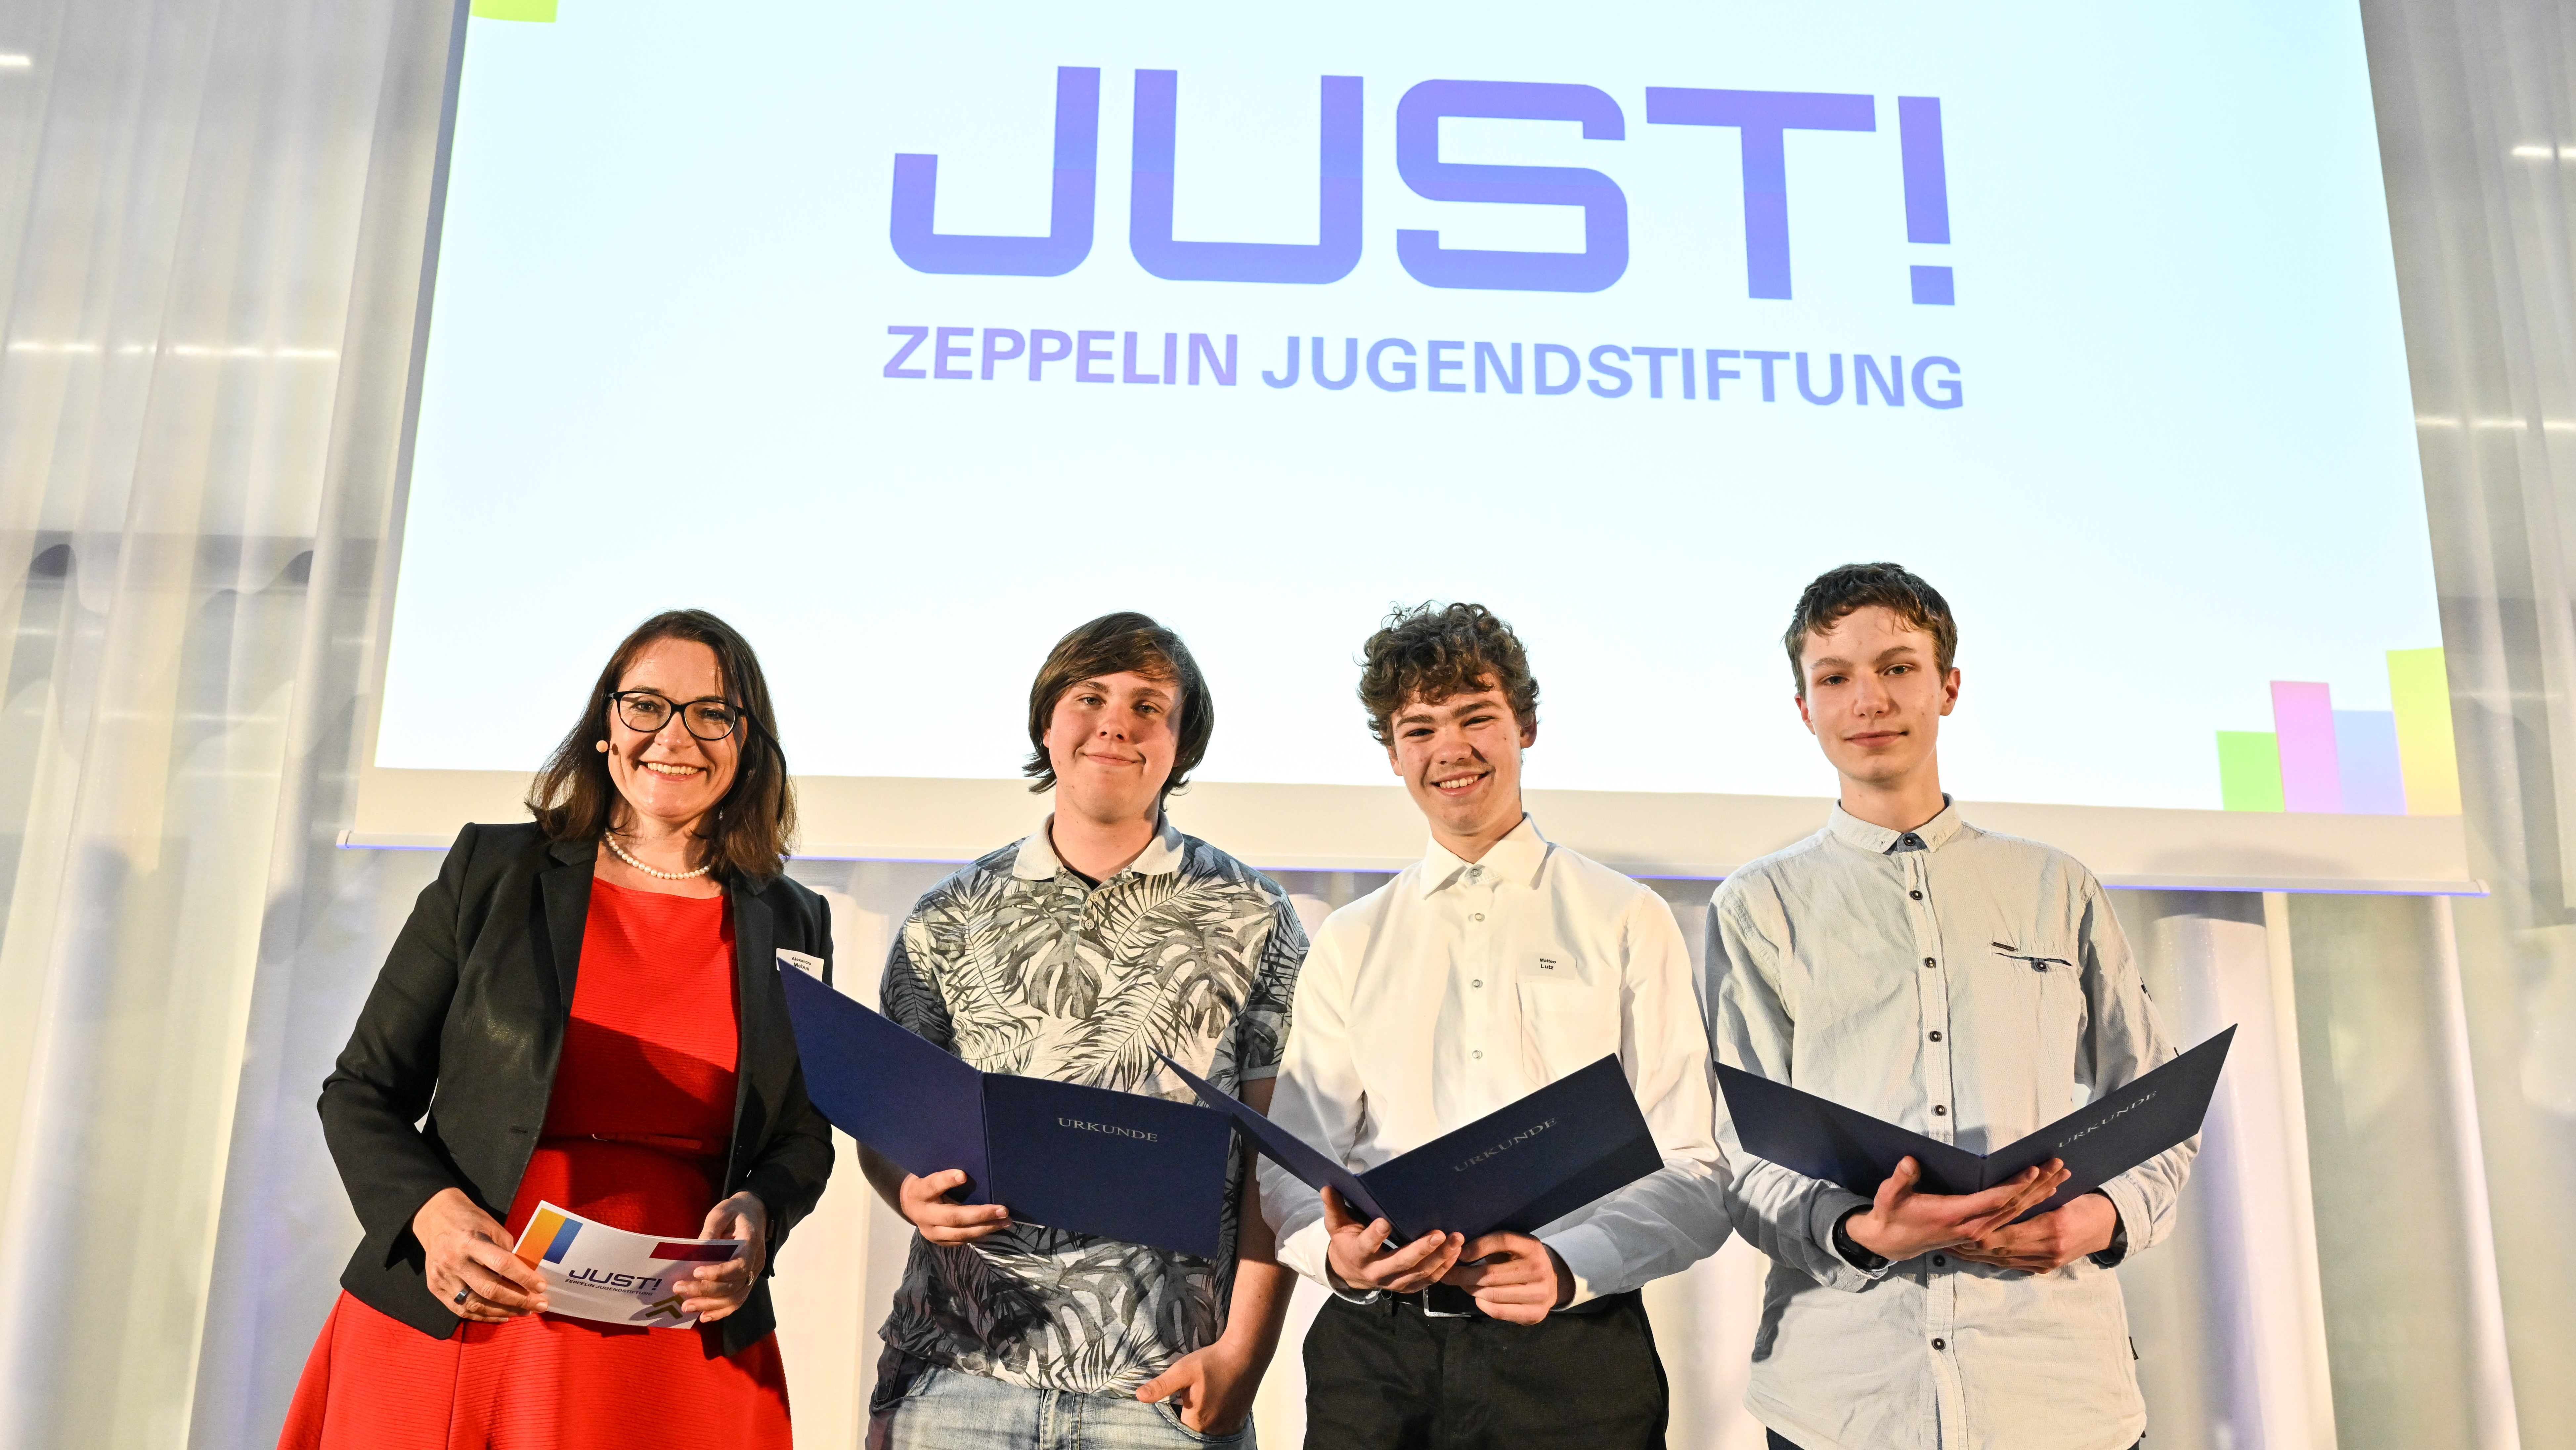 Zeppelin Jugendstiftung JUST! zeichnet Nachwuchs für herausragende Projekte aus 